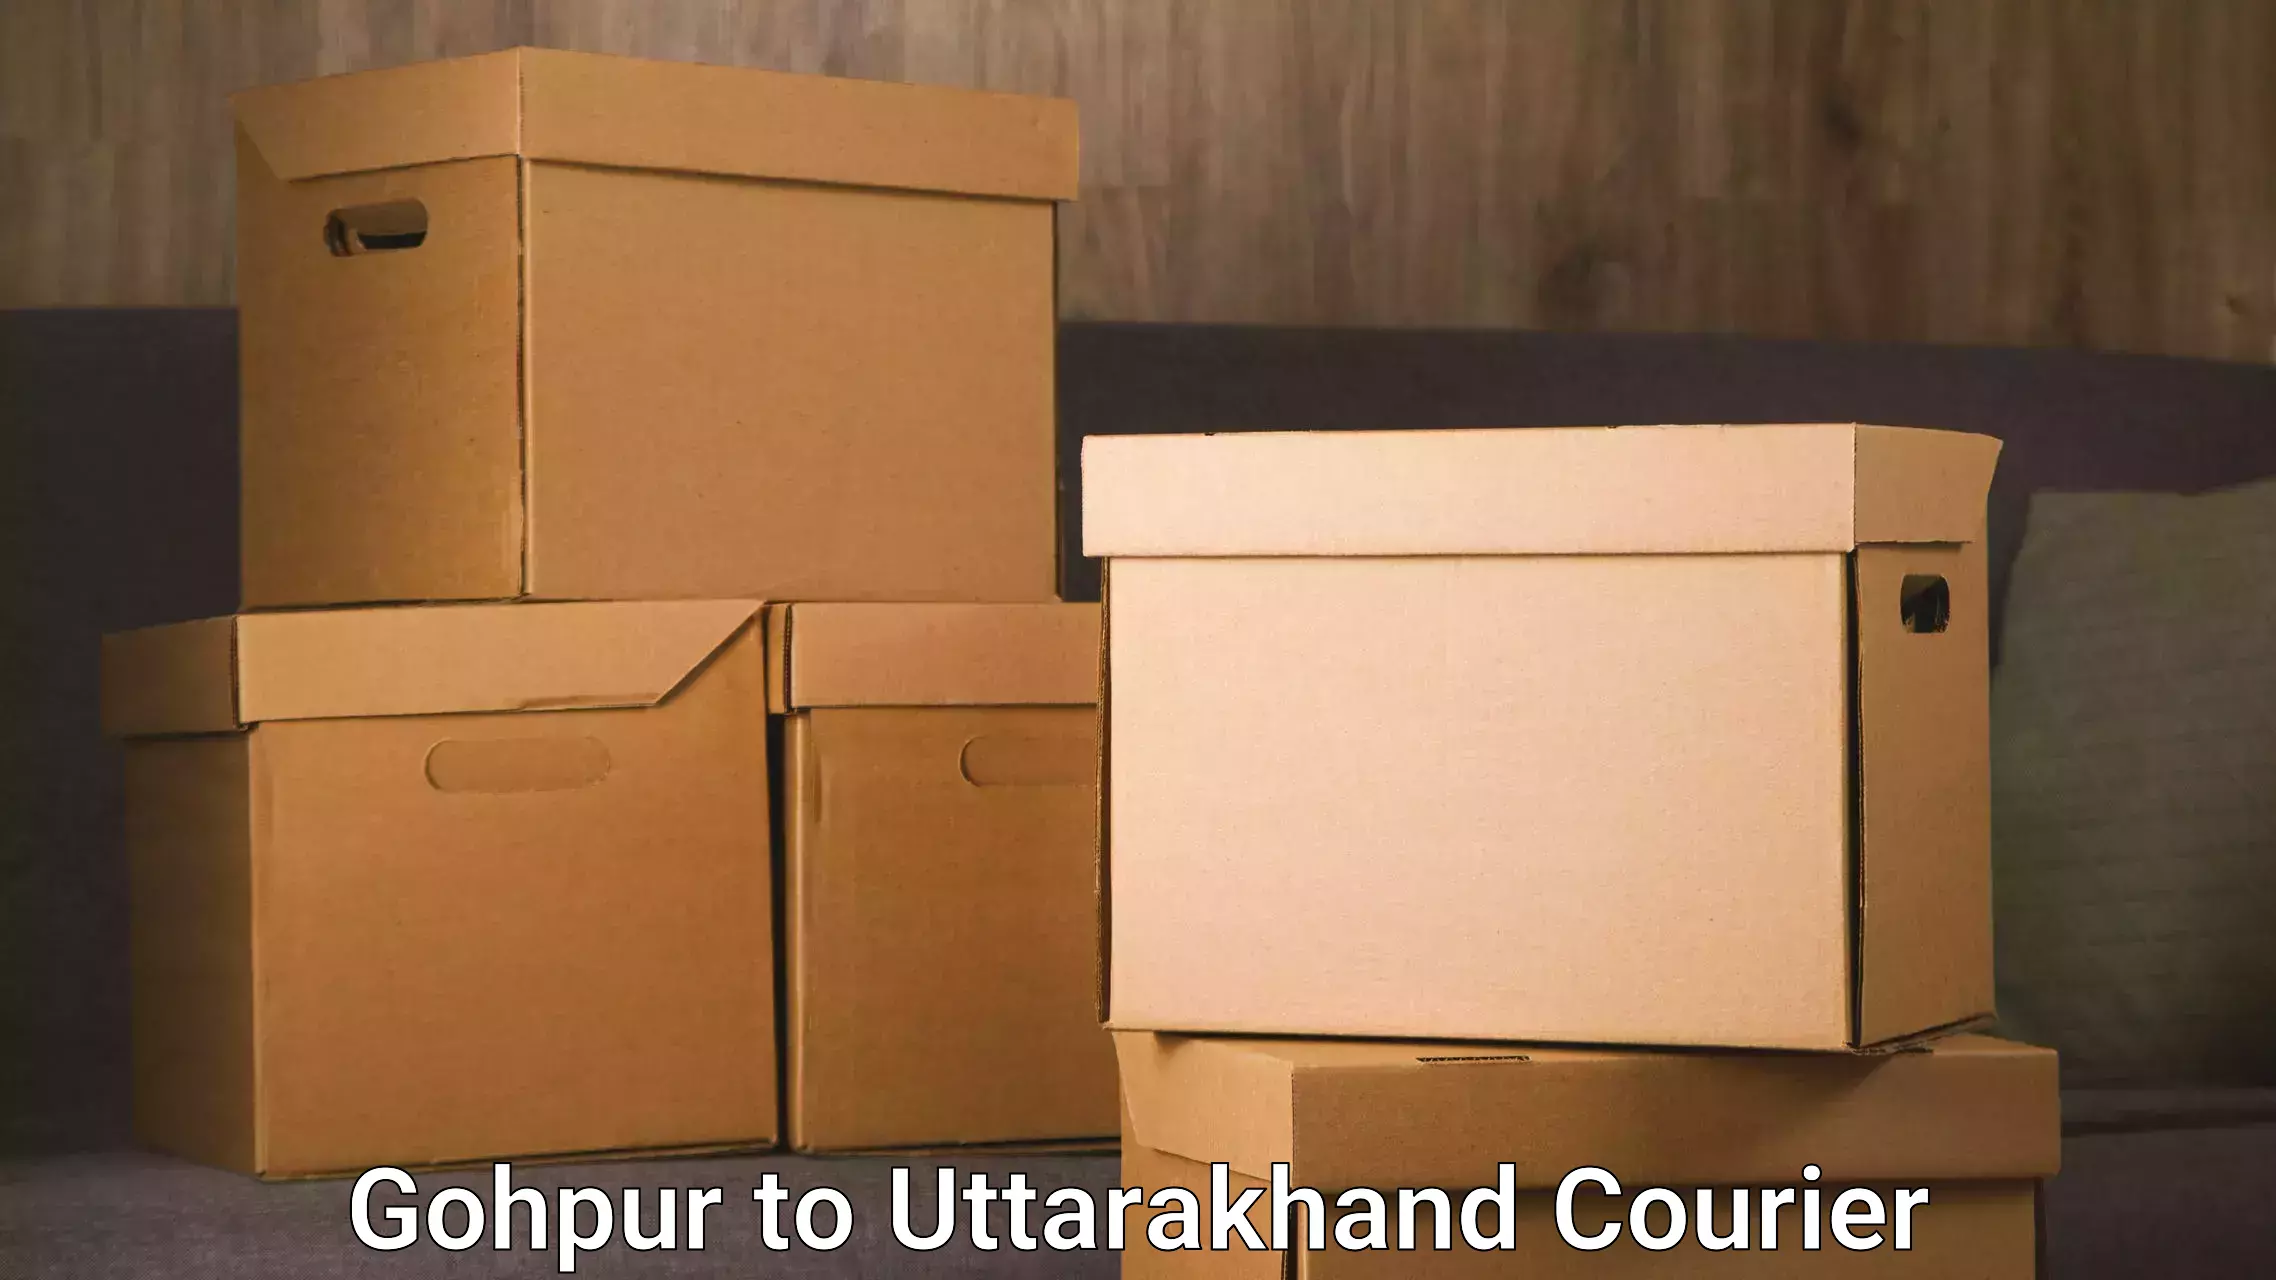 Reliable parcel services Gohpur to Dehradun